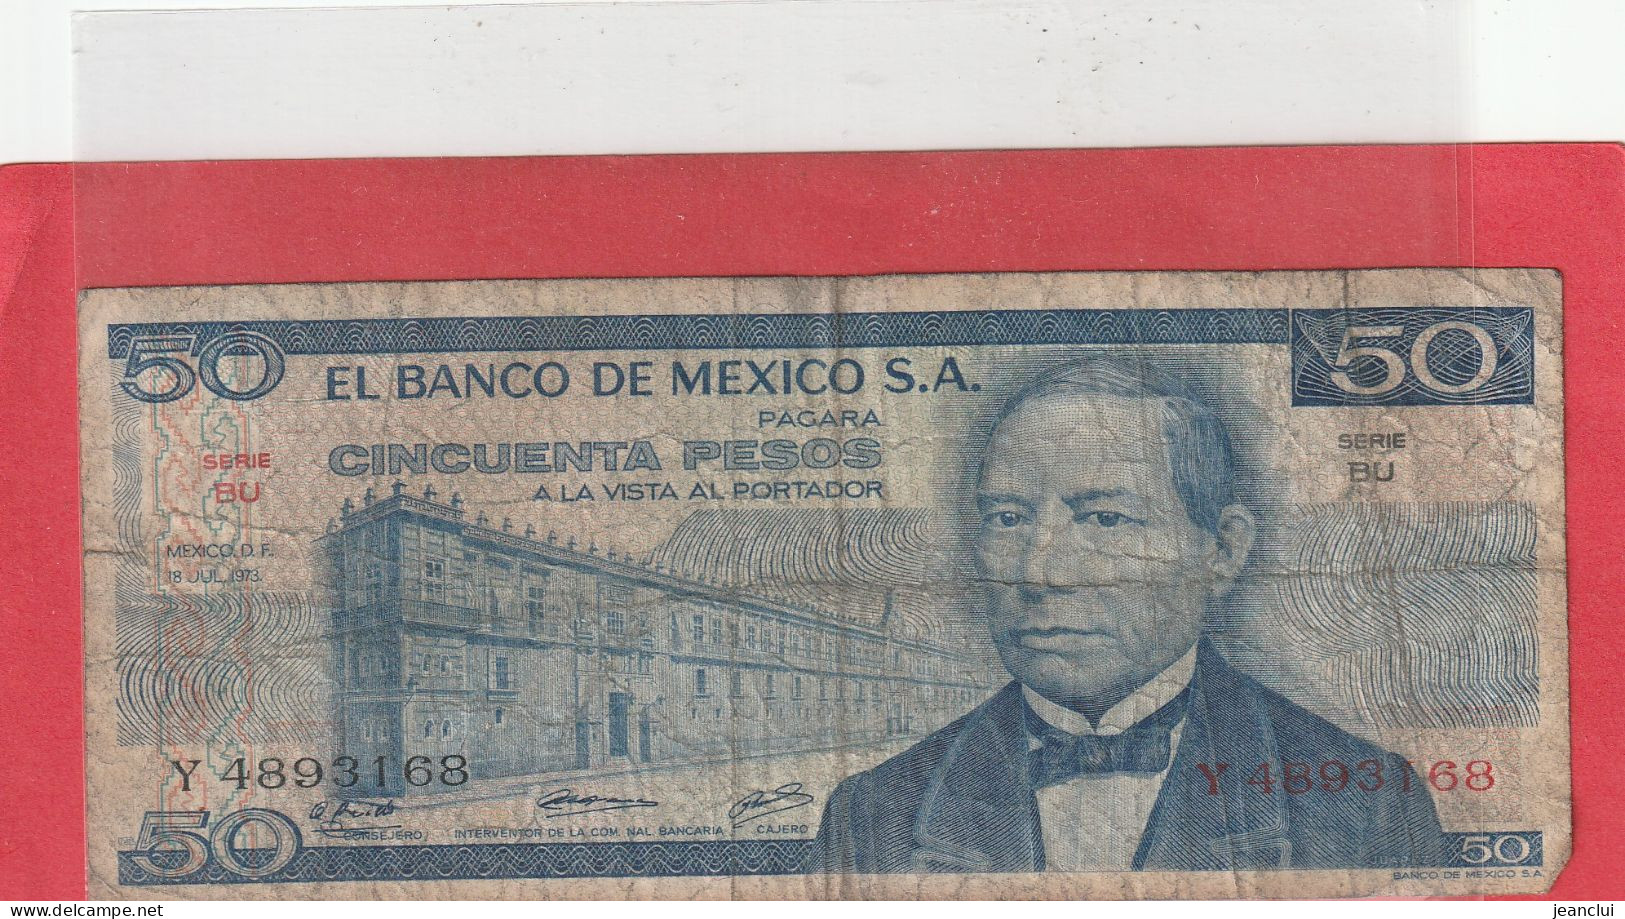 EL BANCO DE MEXICO S.A.  .  50 PESOS  .  18-7-1973  .  N°   Y 4893168 .  2 SCANNES  .  BILLET TRES USITE - Mexiko